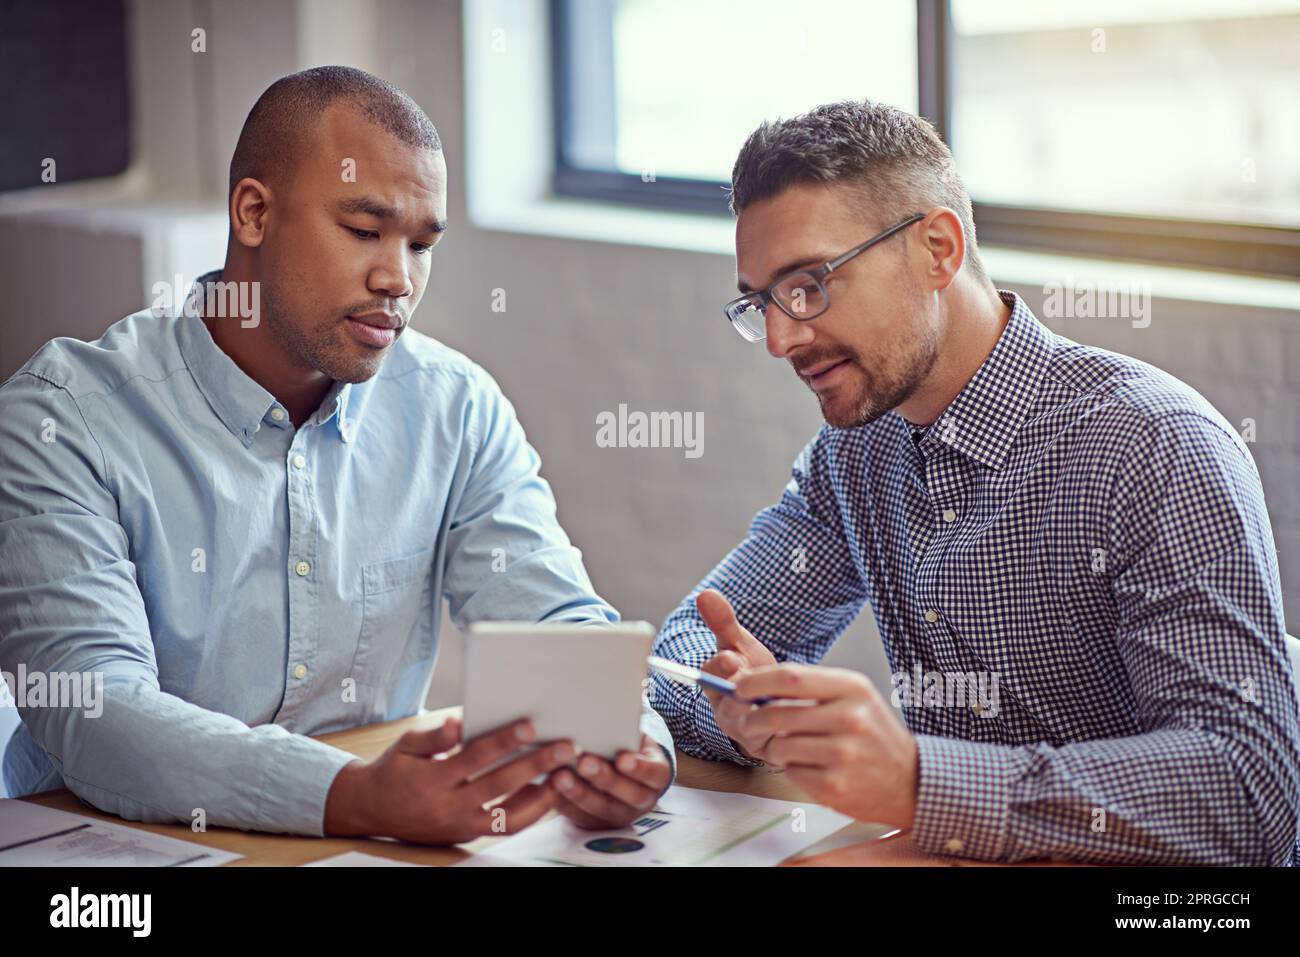 Utilizzare la tecnologia per migliorare la propria attività. Immagine di due designer che lavorano su un tablet digitale in ufficio. Foto Stock